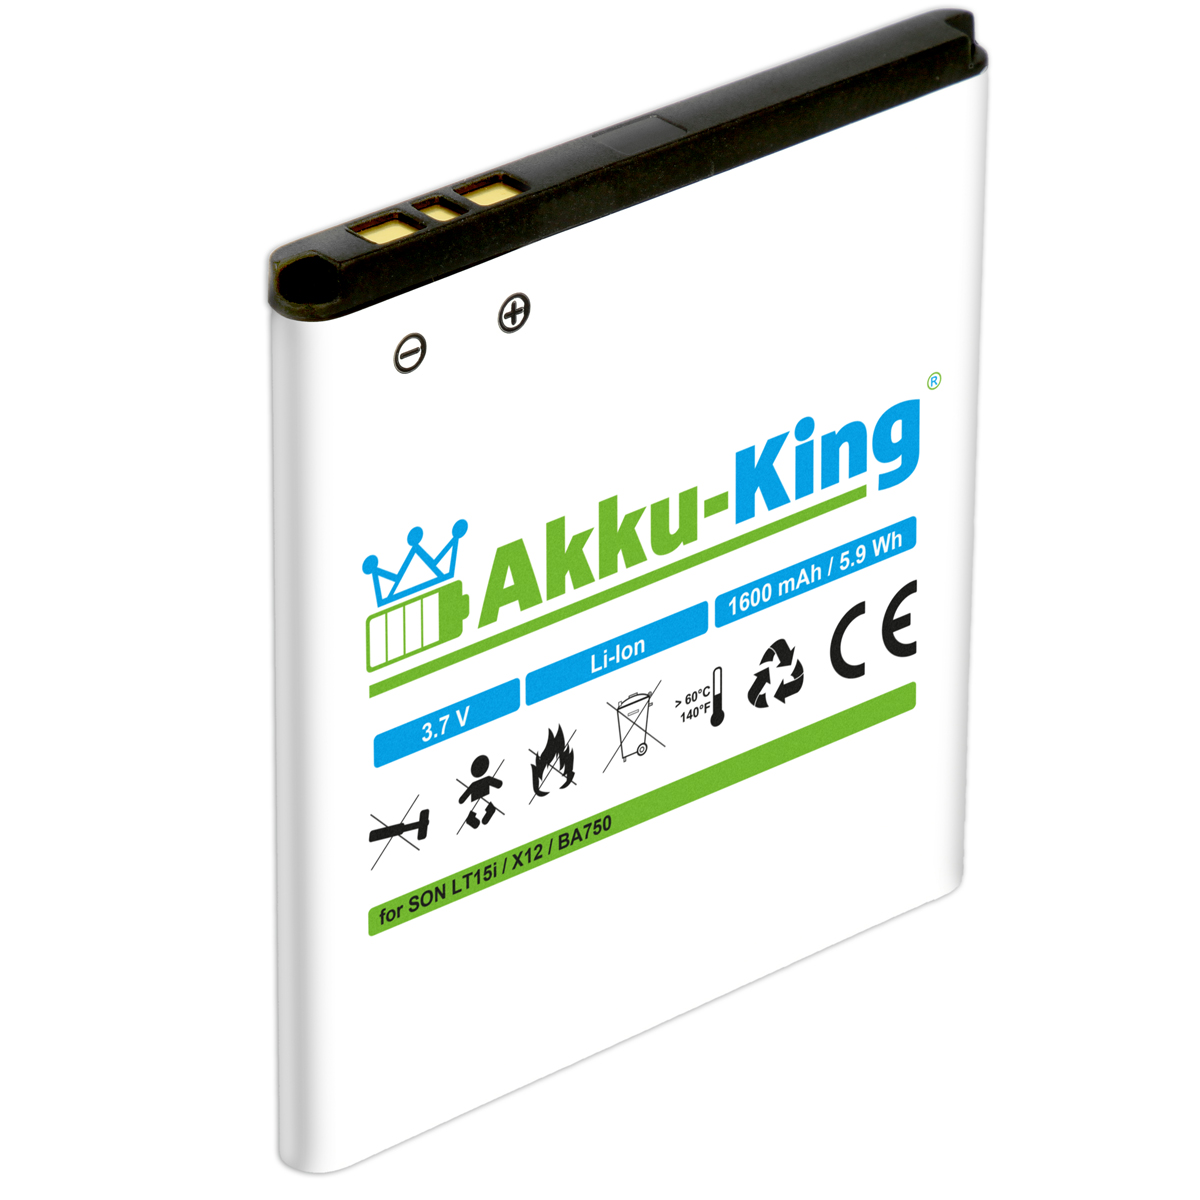 AKKU-KING Akku kompatibel mit Sony-Ericsson Volt, 1600mAh 3.7 BA750 Li-Ion Handy-Akku